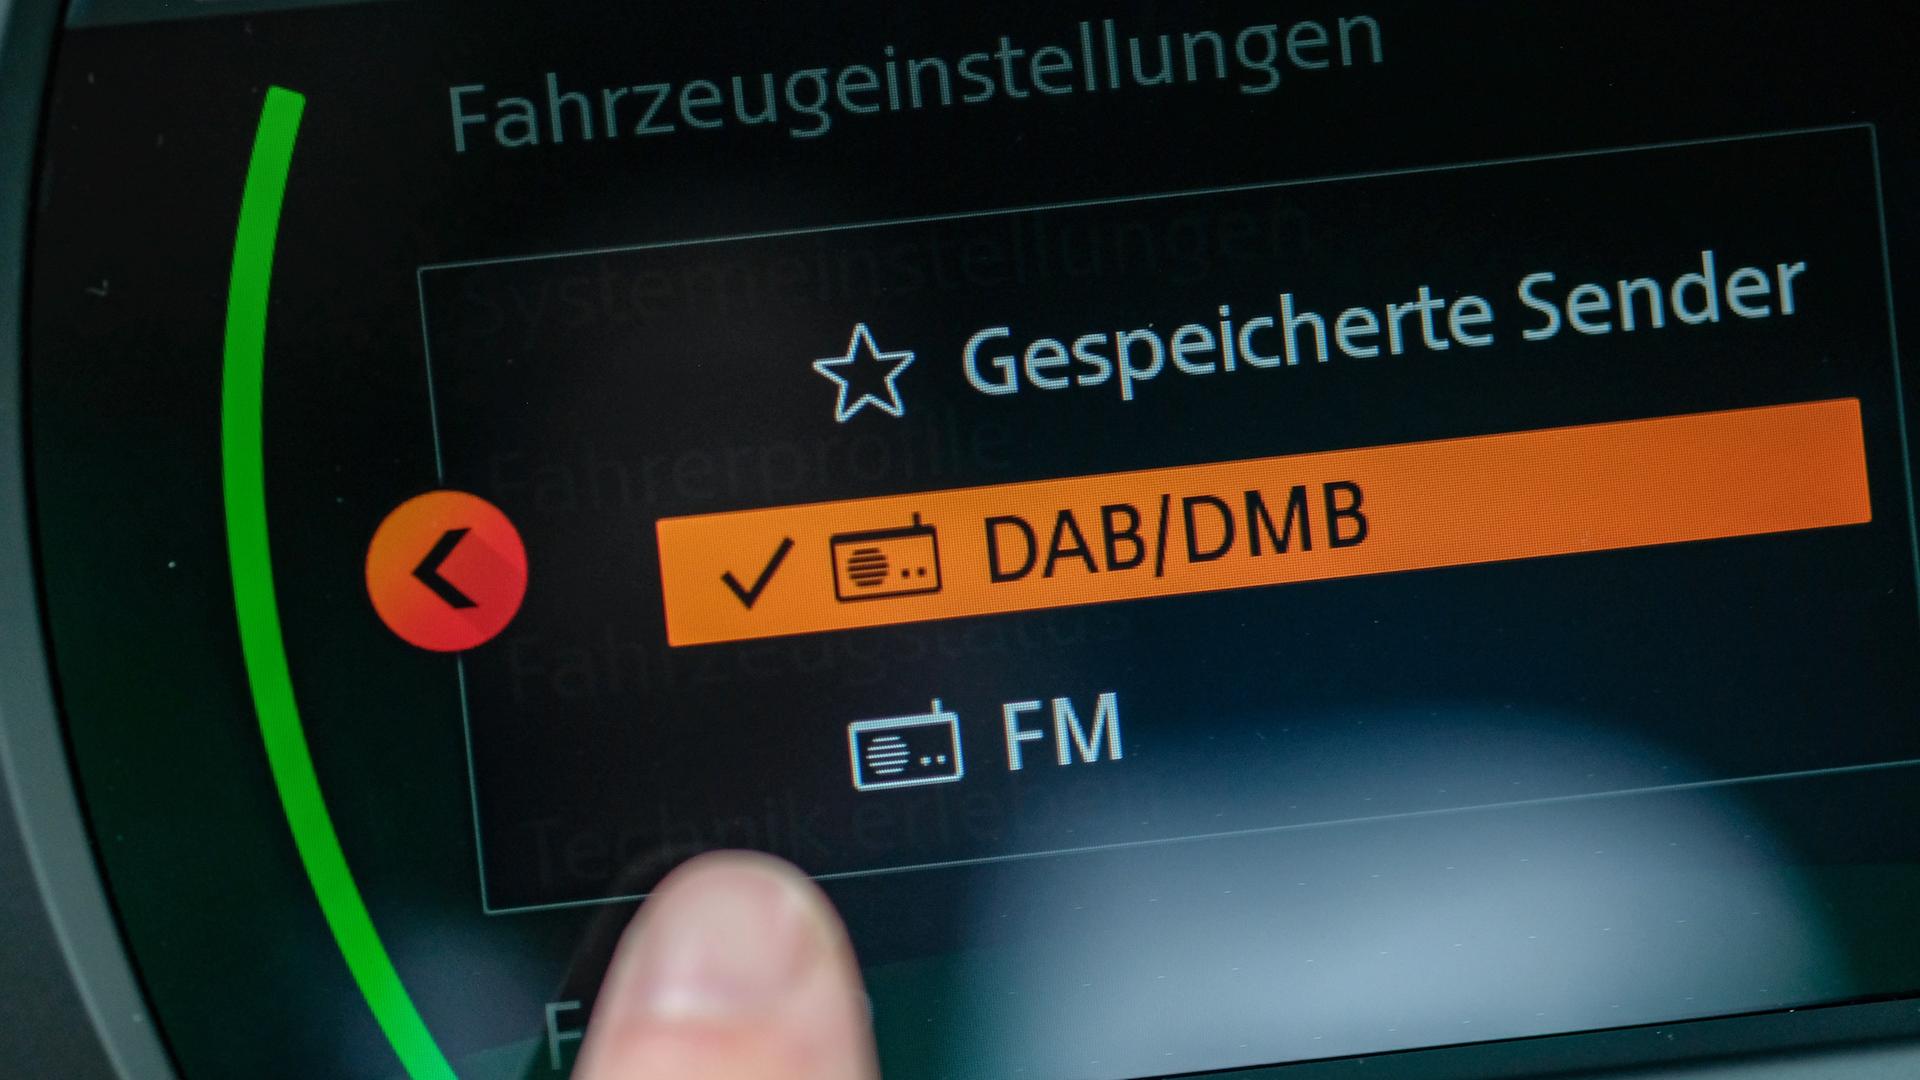 Auf der Anzeige eines Autoradios ist die Anzeige DAB/DMB zu sehen. 